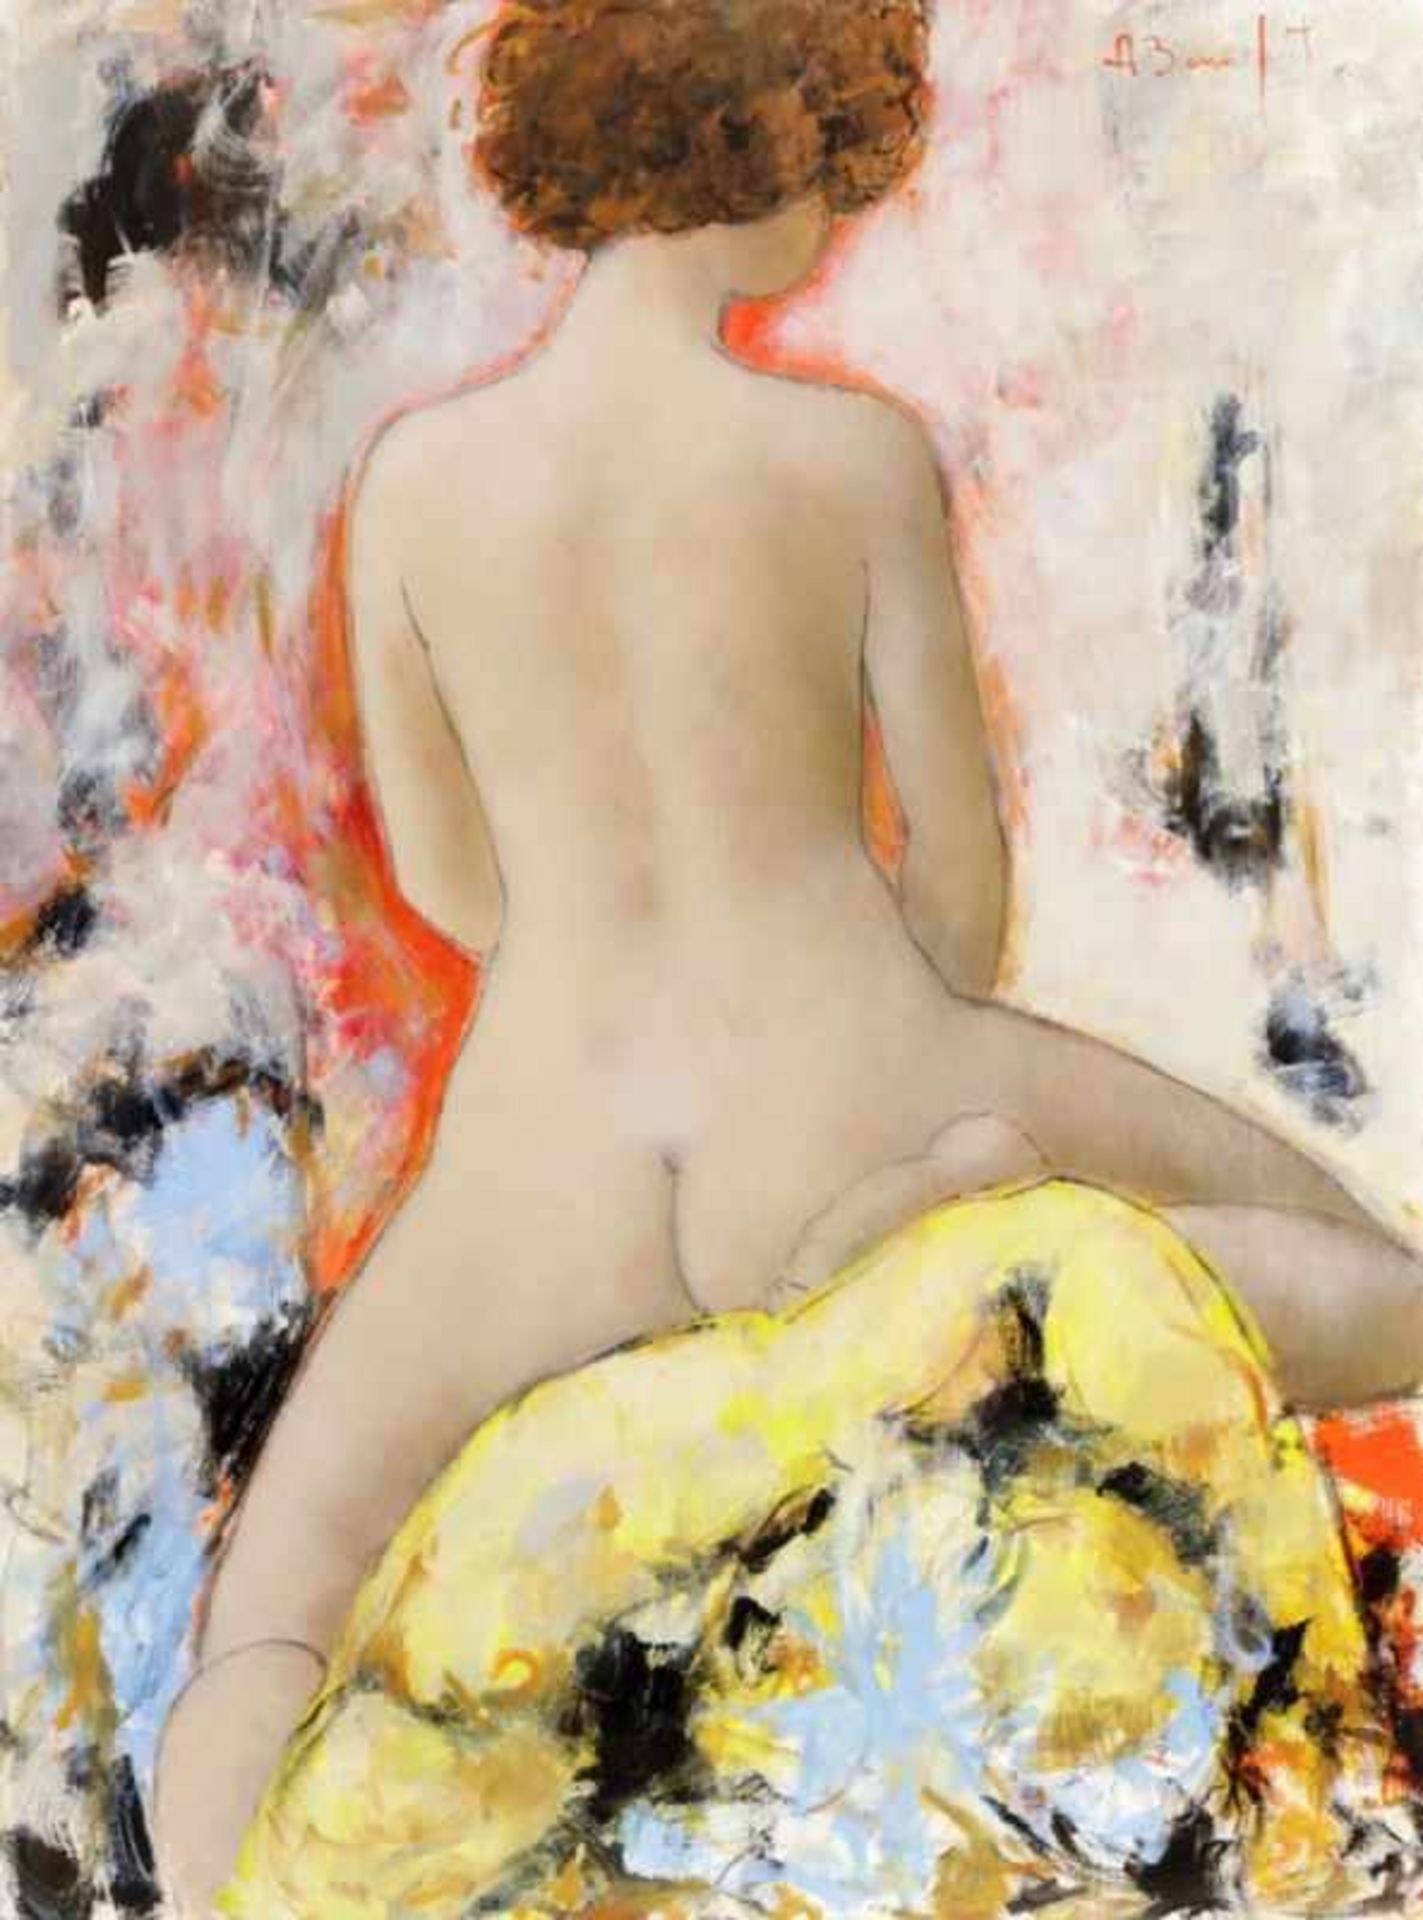 Alain Bonnefoit 1937 Paris - "Suzon" - Öl/Lwd. 130,5 x 97 cm. Sign. r. o.: A. Bonnefoit. Auf der